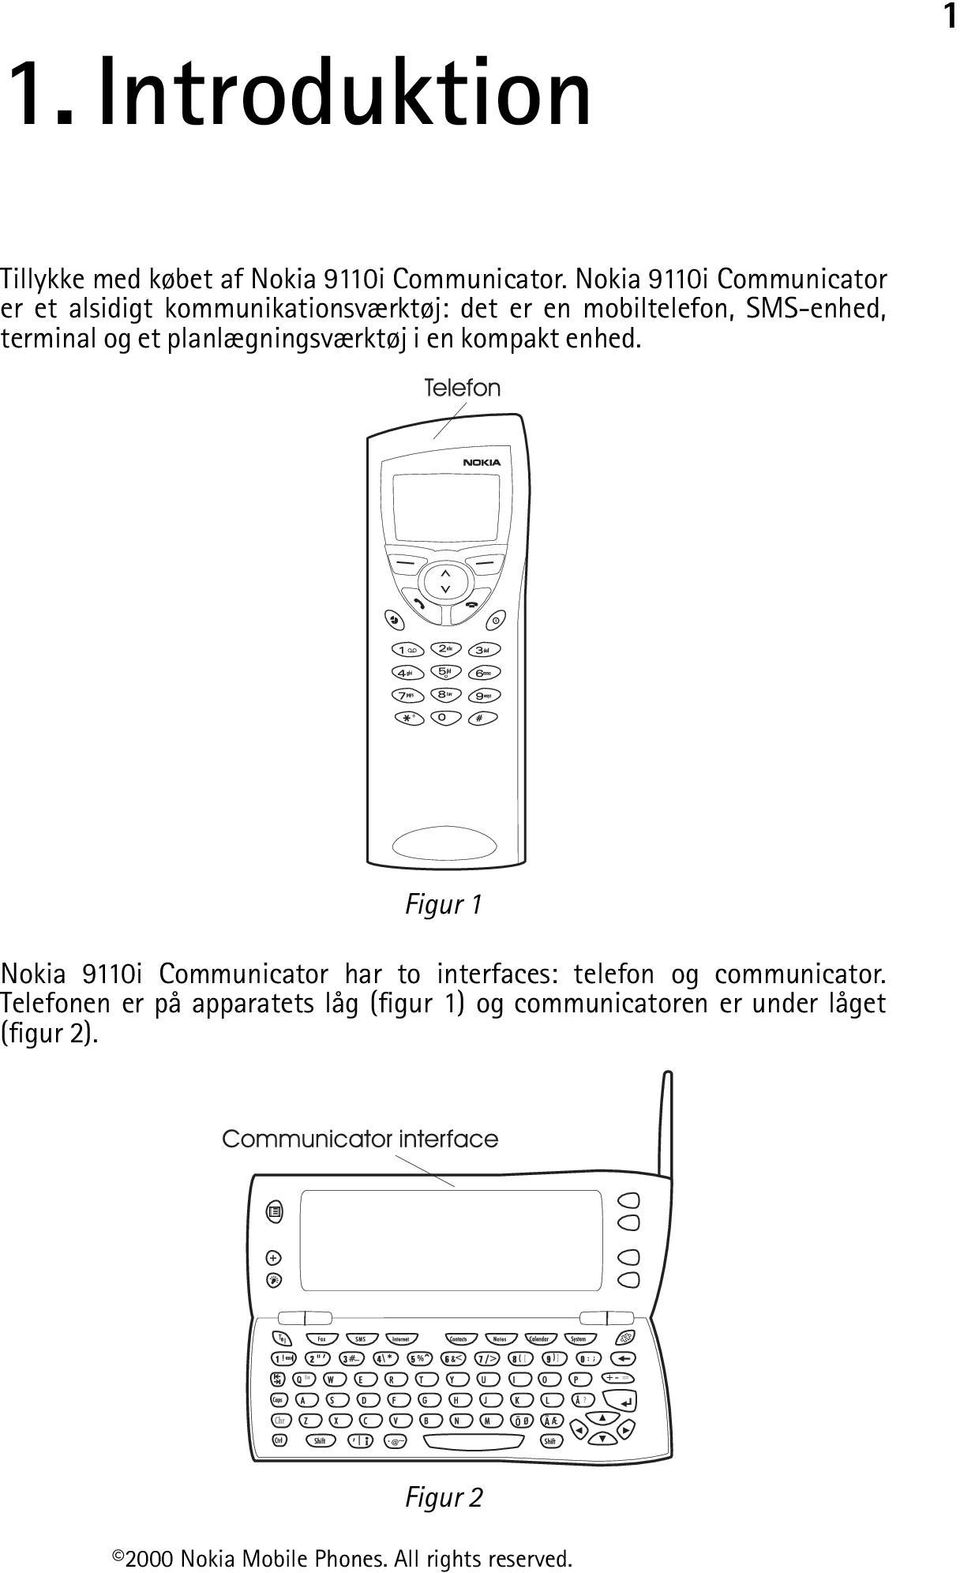 SMS-enhed, terminal og et planlægningsværktøj i en kompakt enhed.